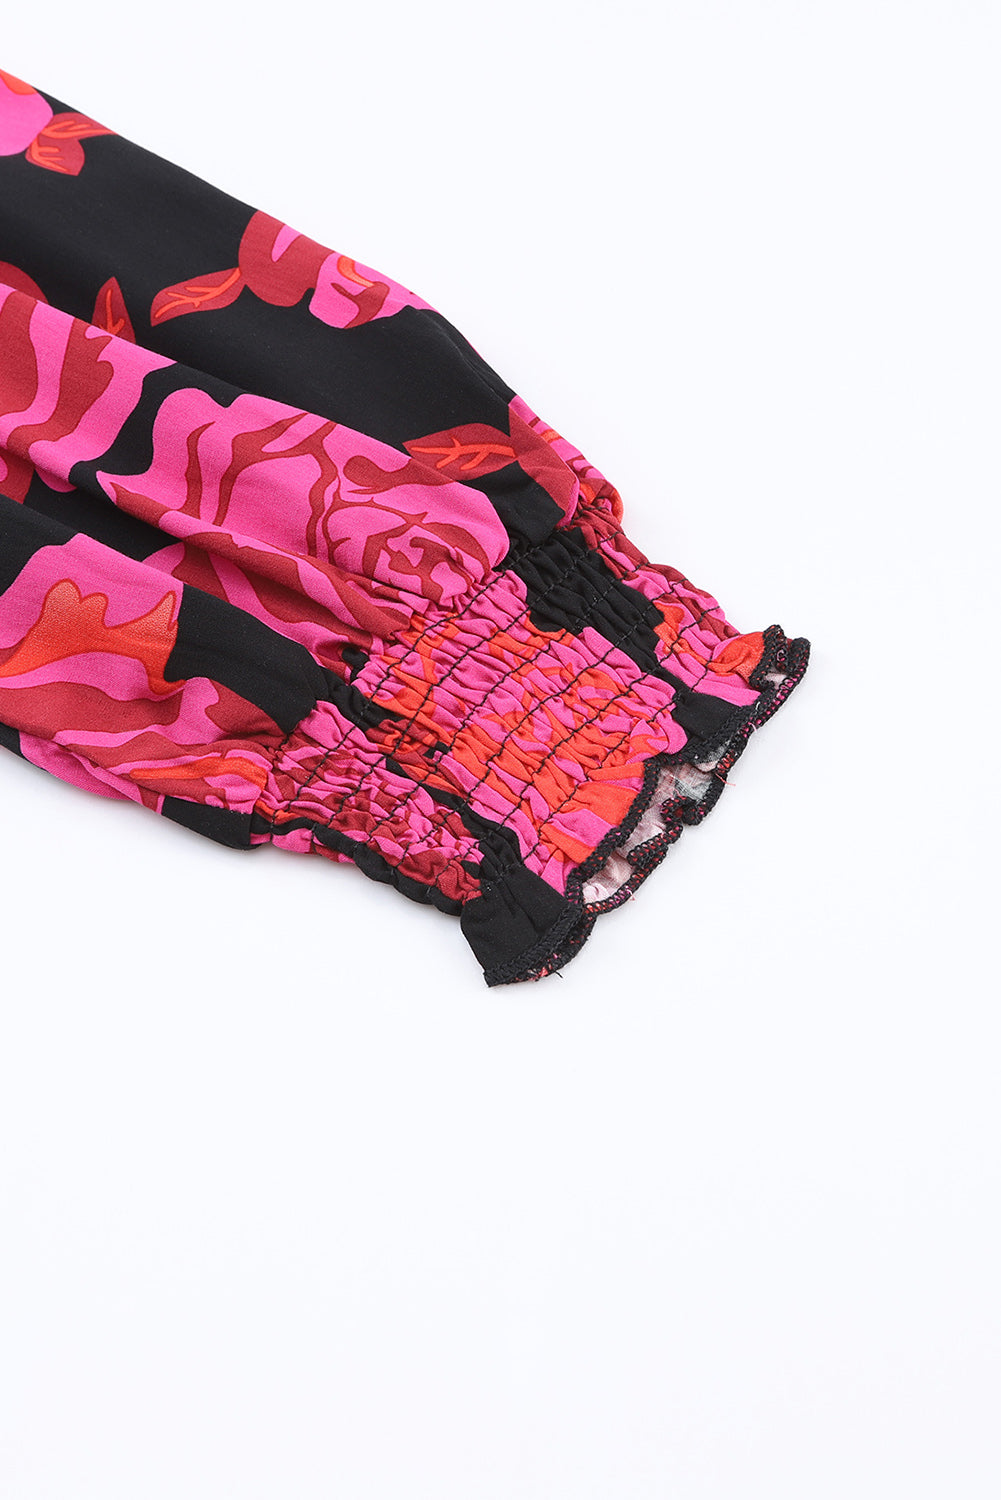 Camicia a maniche lunghe con polsini arricciati floreali rosa